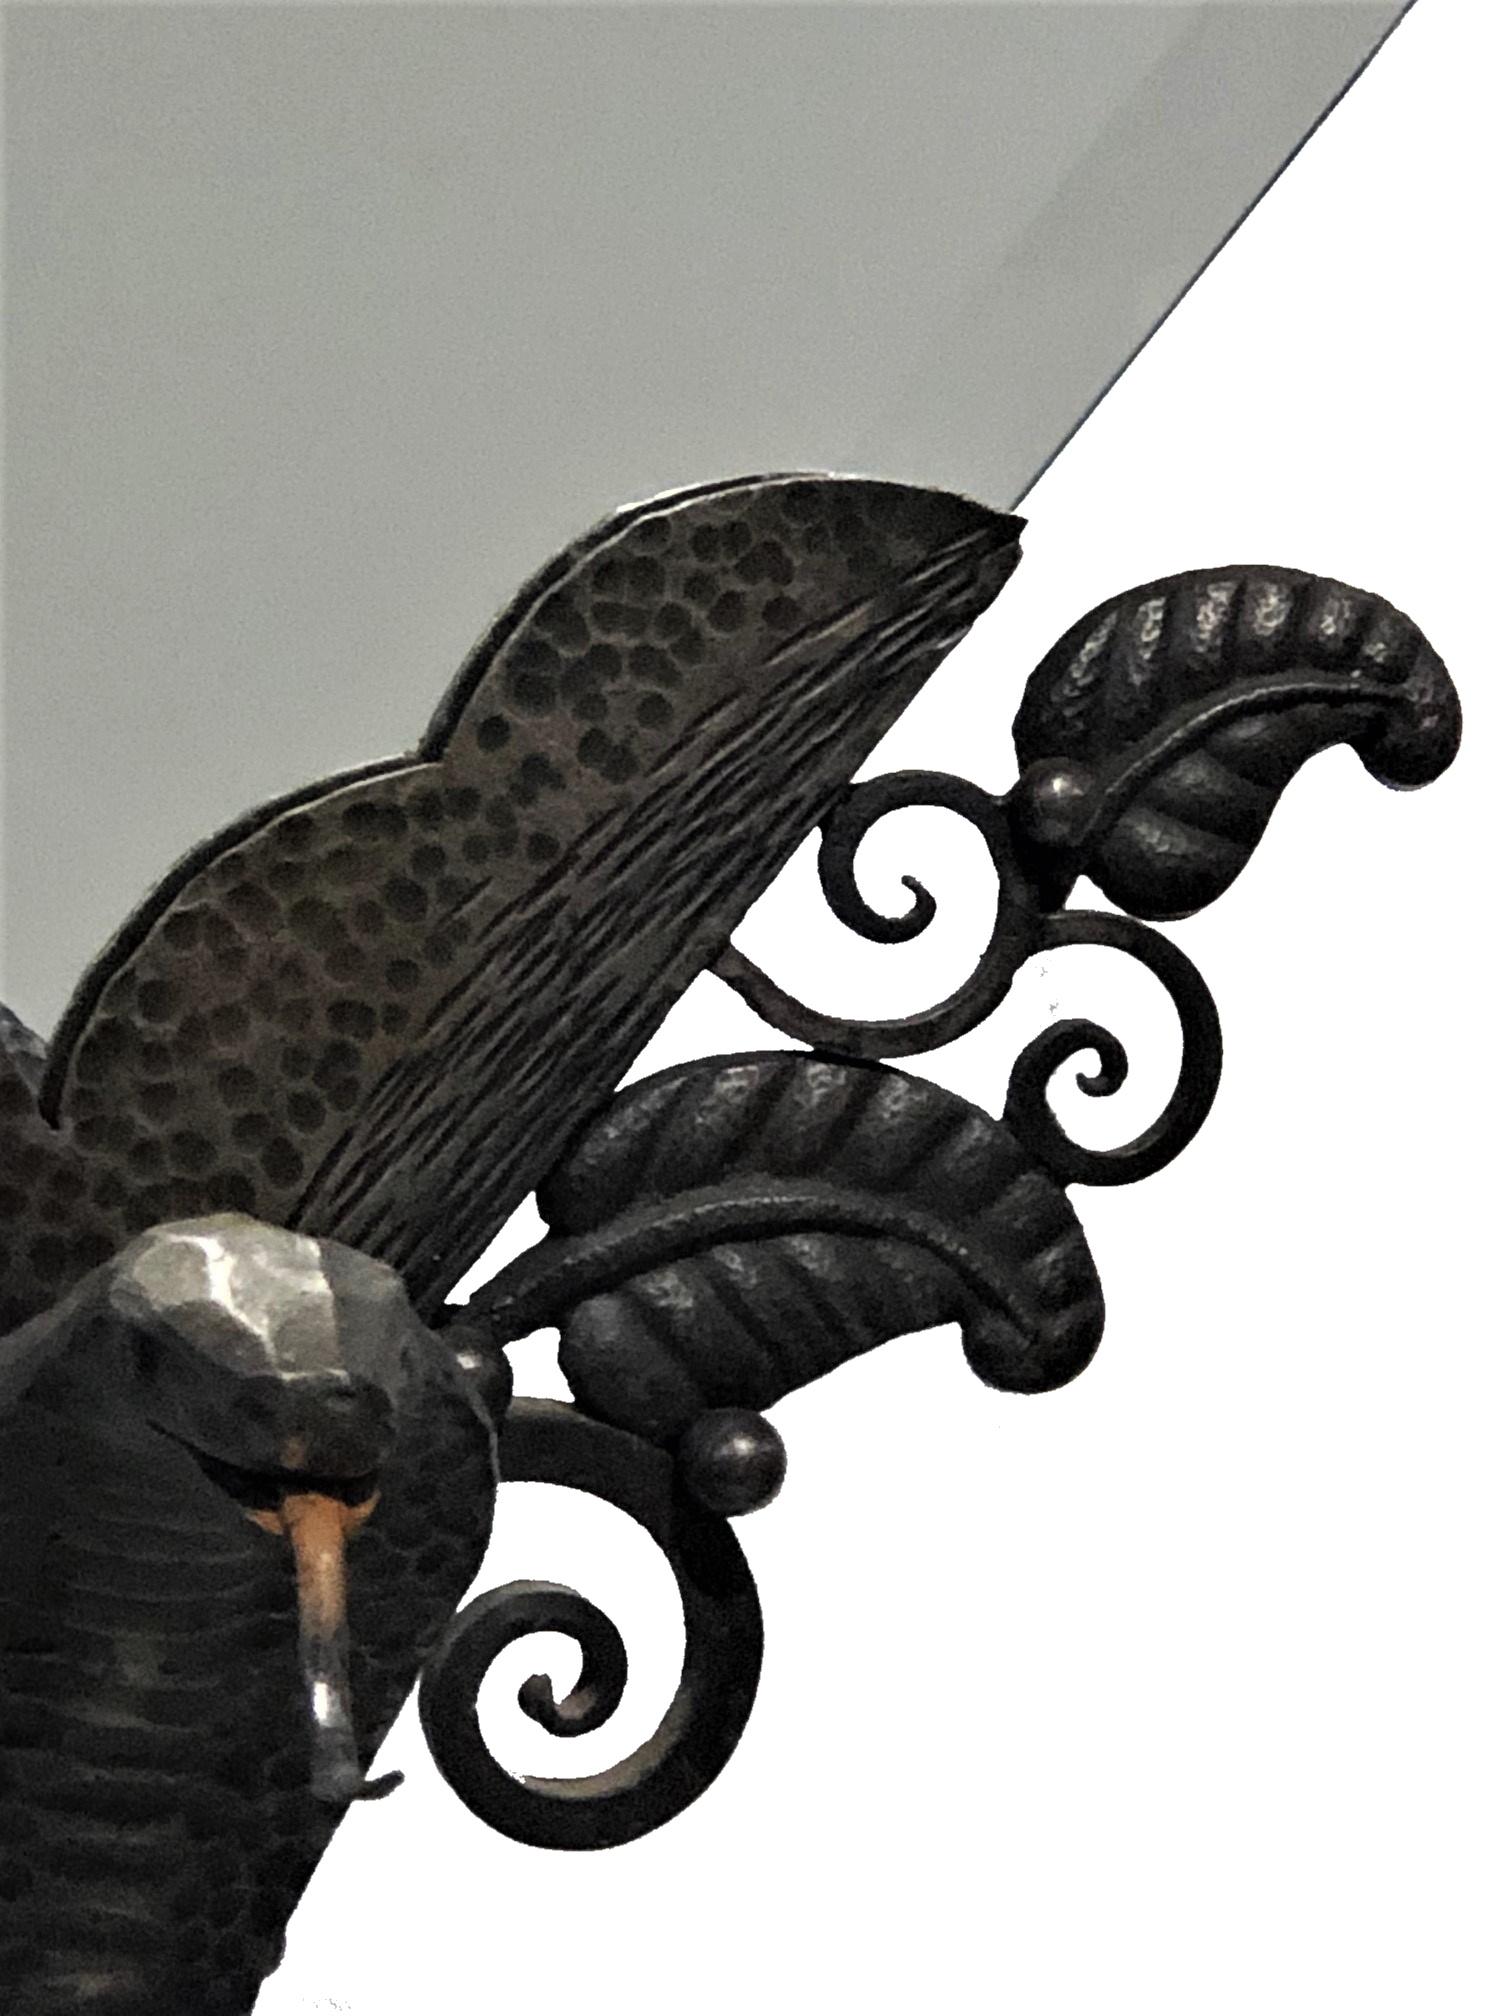 Französischer Art déco
Tischspiegel mit Schlangensockel
Schmiedeeisen
CIRCA 1920

ÜBER
Dieser elegante, schmiedeeiserne amerikanische Art-Déco-Tischspiegel von außergewöhnlichem Design zeichnet sich durch feinstes Schmiedeeisen, einen Standfuß mit